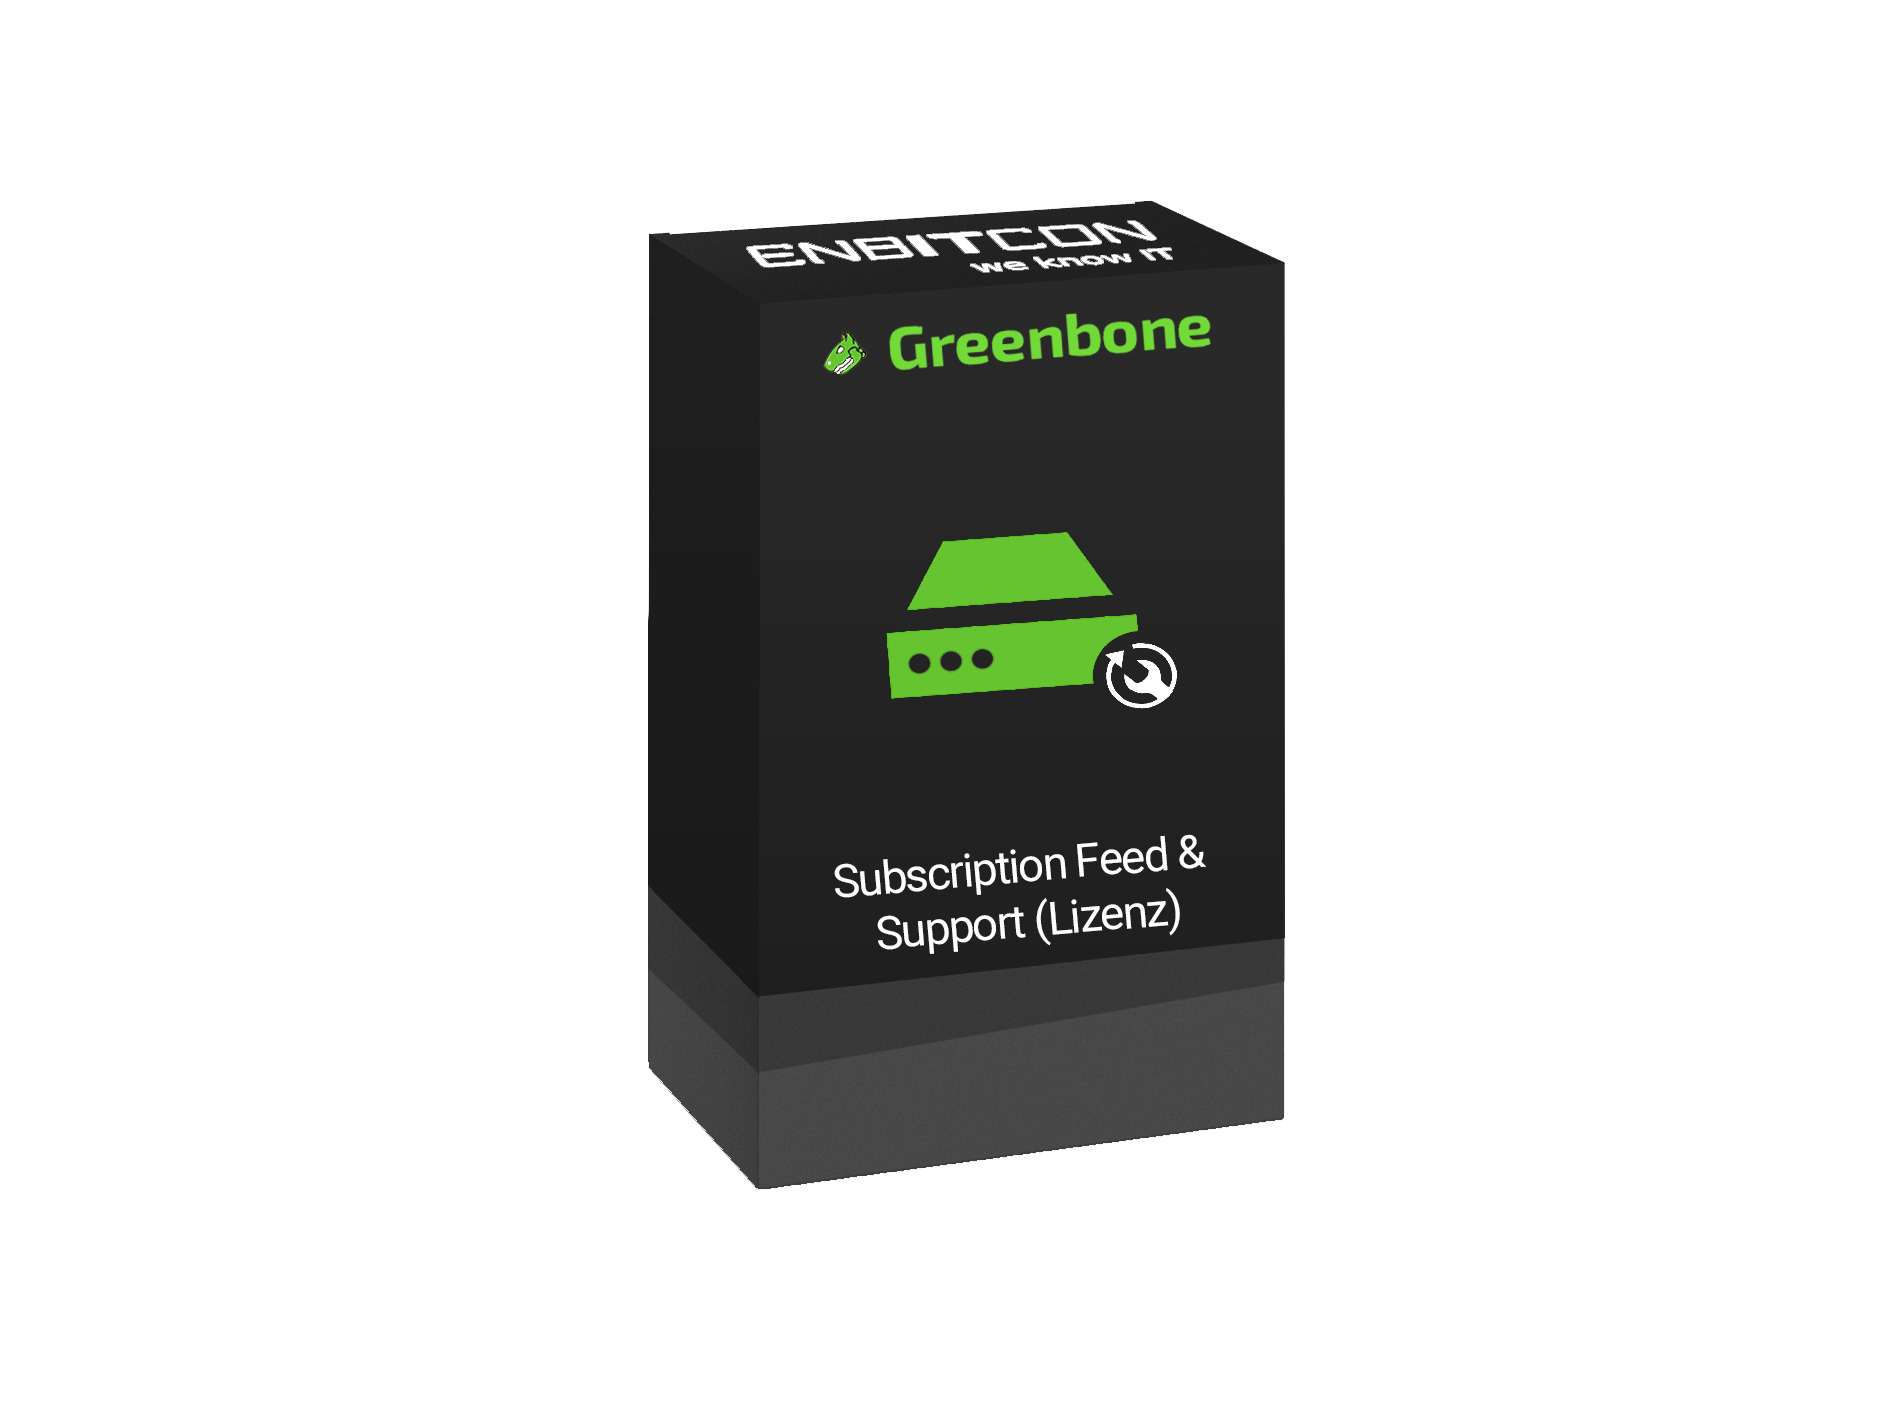 Greenbone Subscription Feed und Support Lizenz Vorschaubild mit Greenbone logo und Lizenzbezeichnung